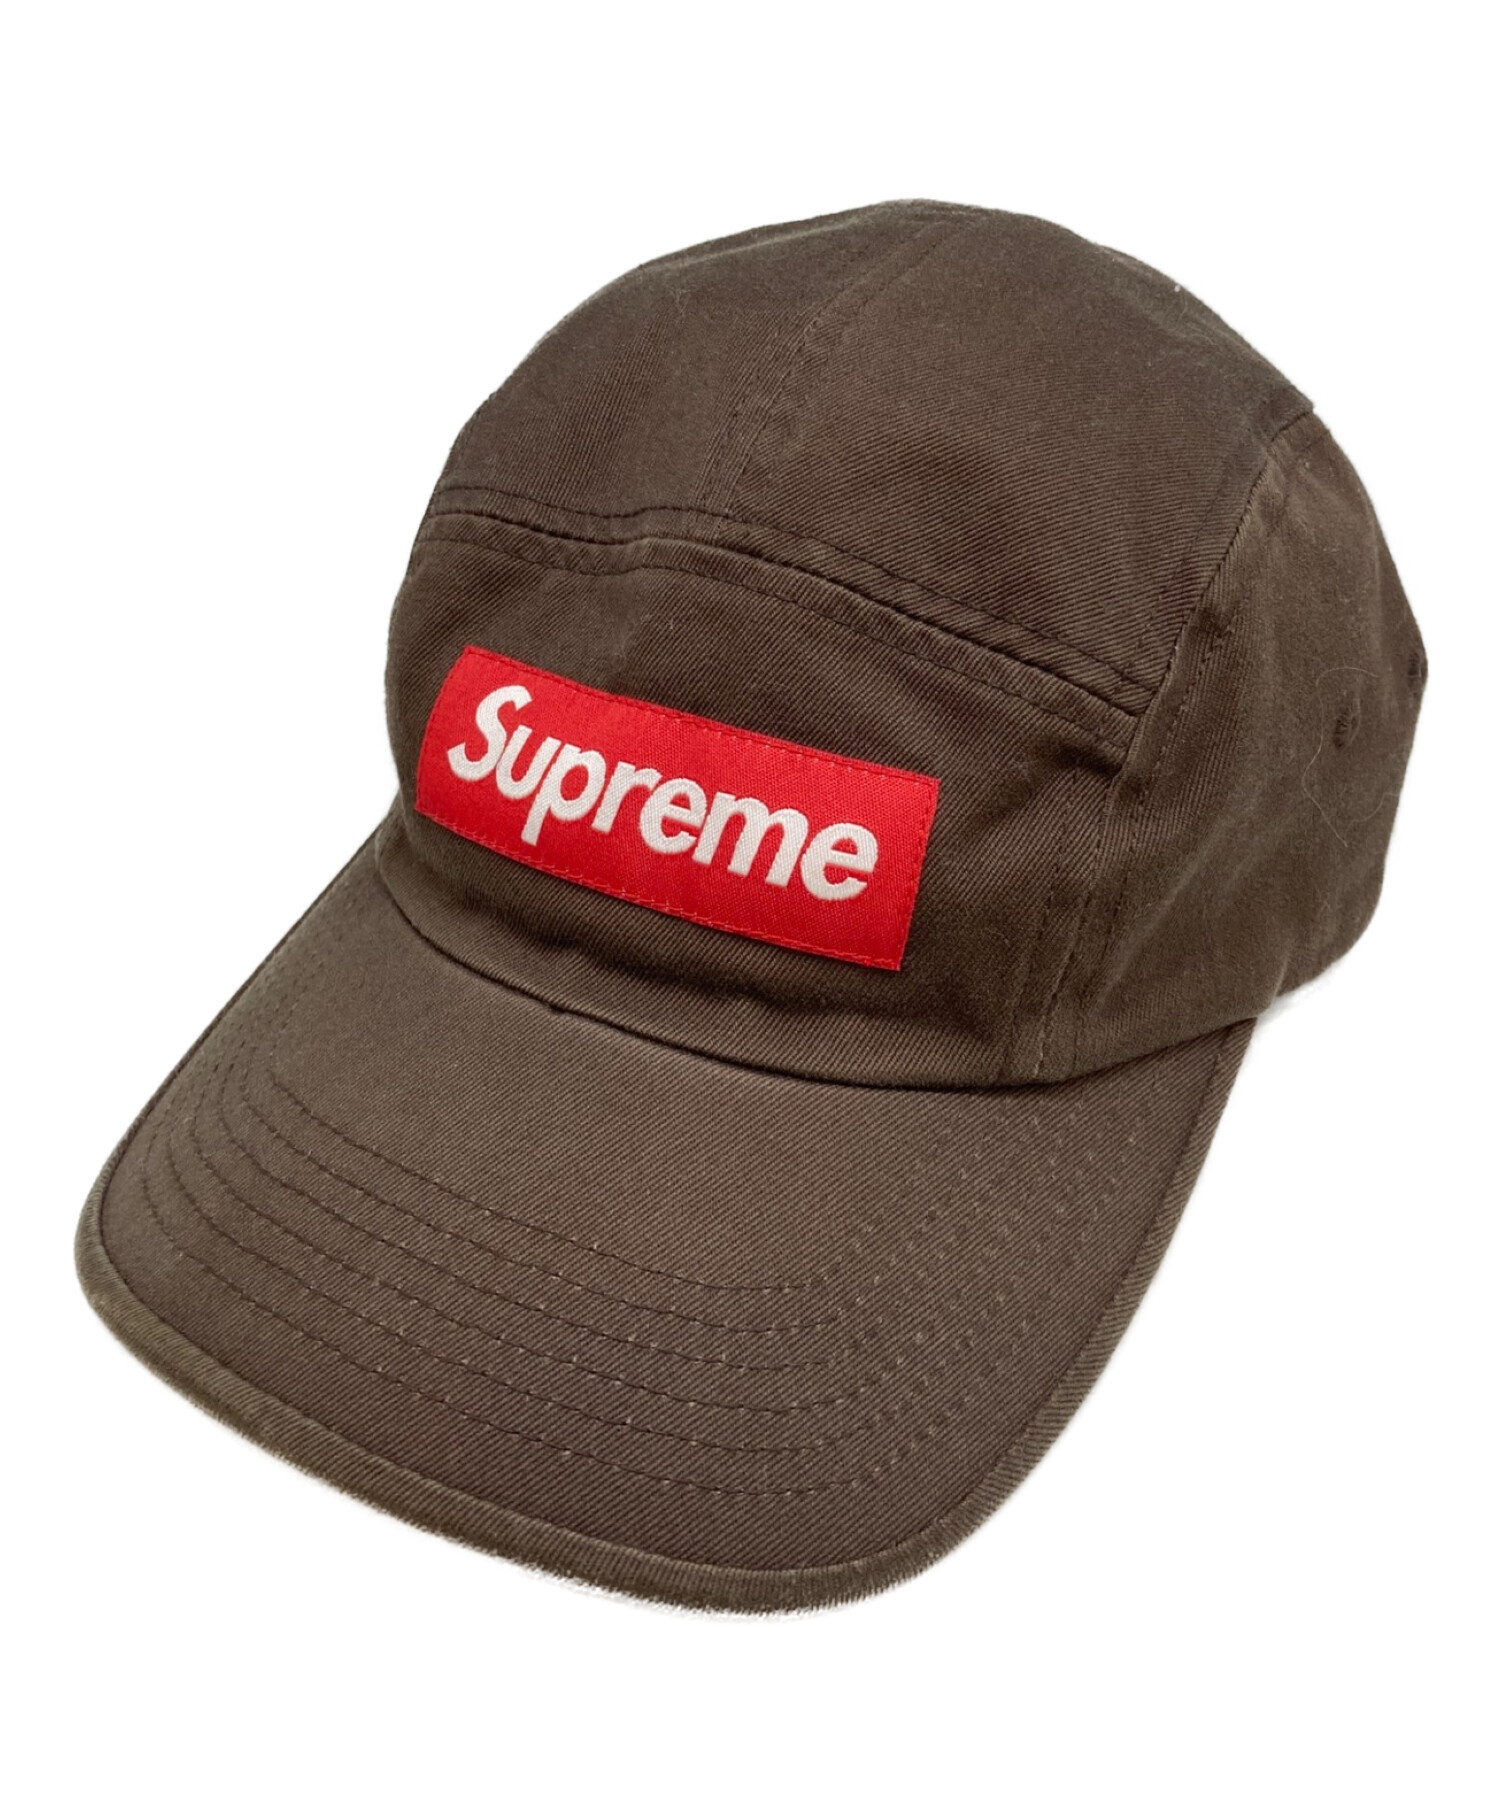 supreme キャップ ブラウン - 帽子